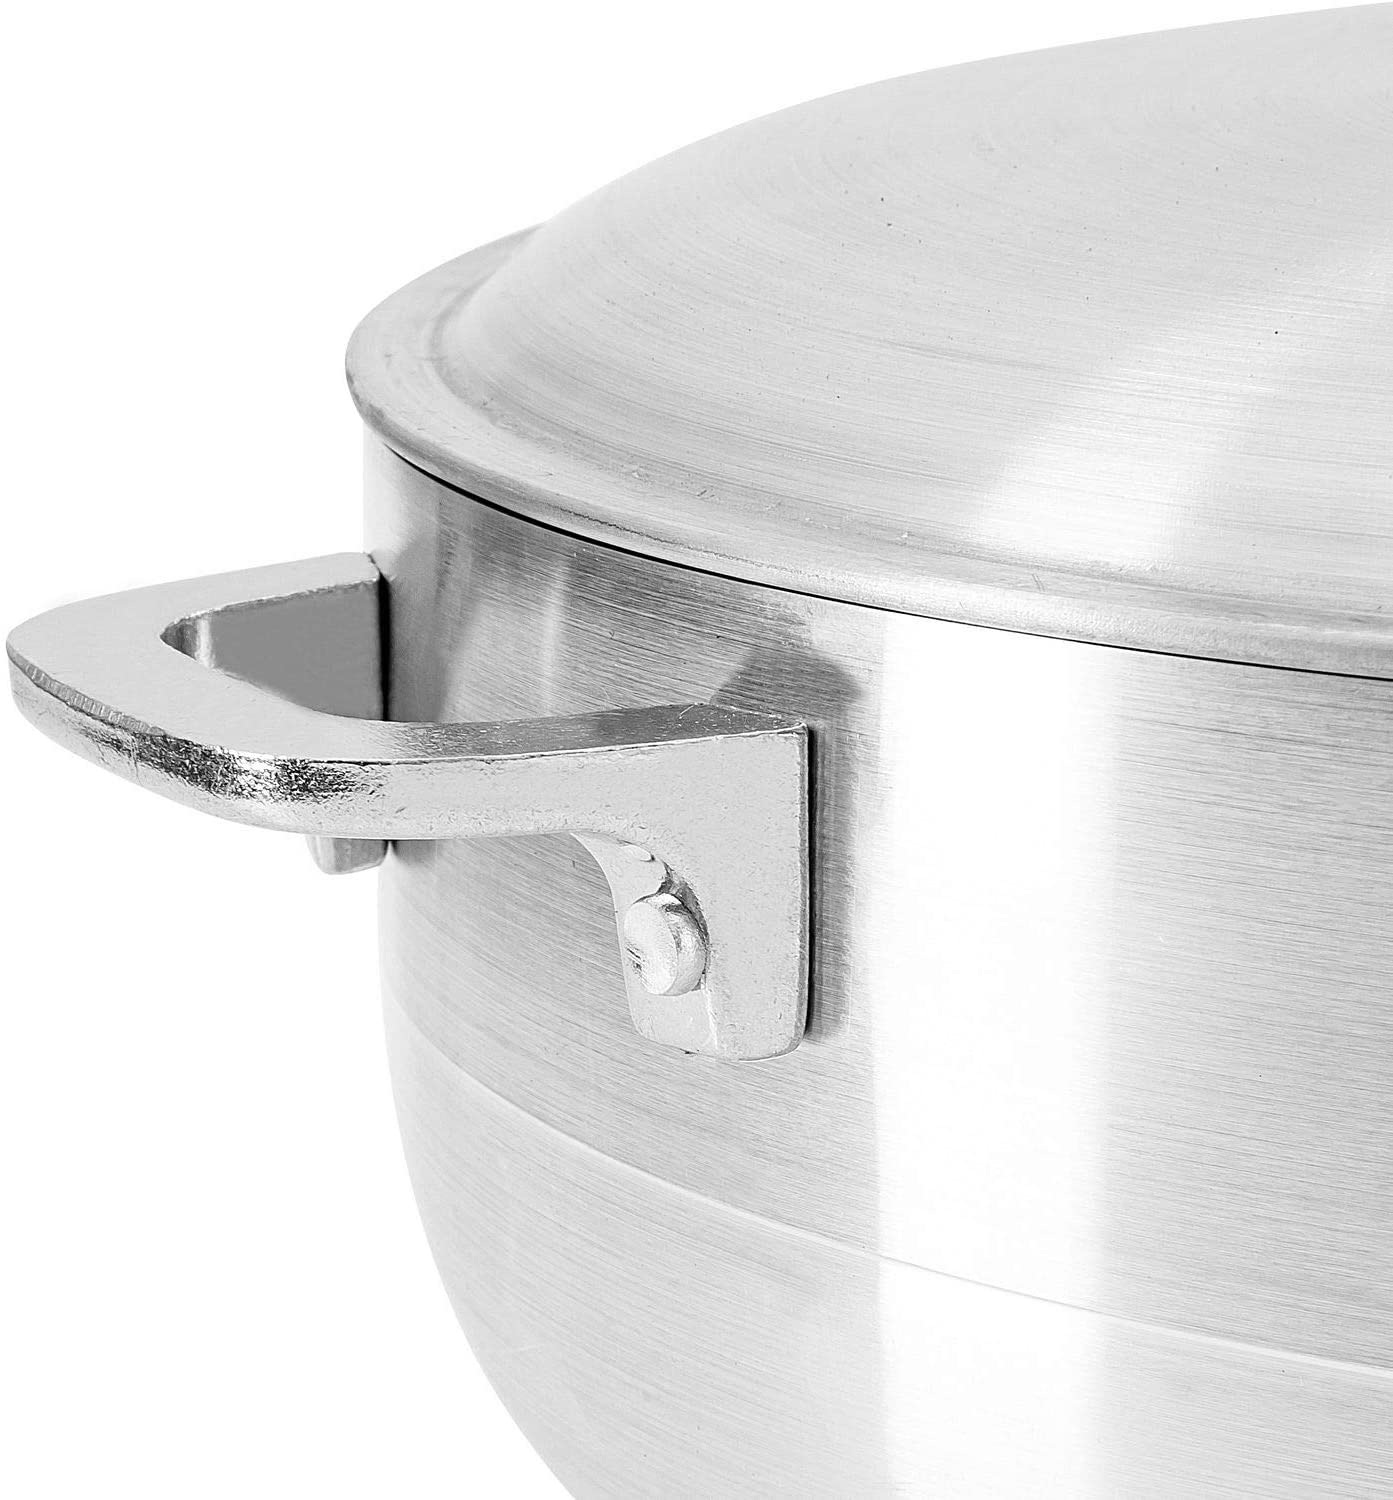 Cast Aluminum Cooking Pot - Silver